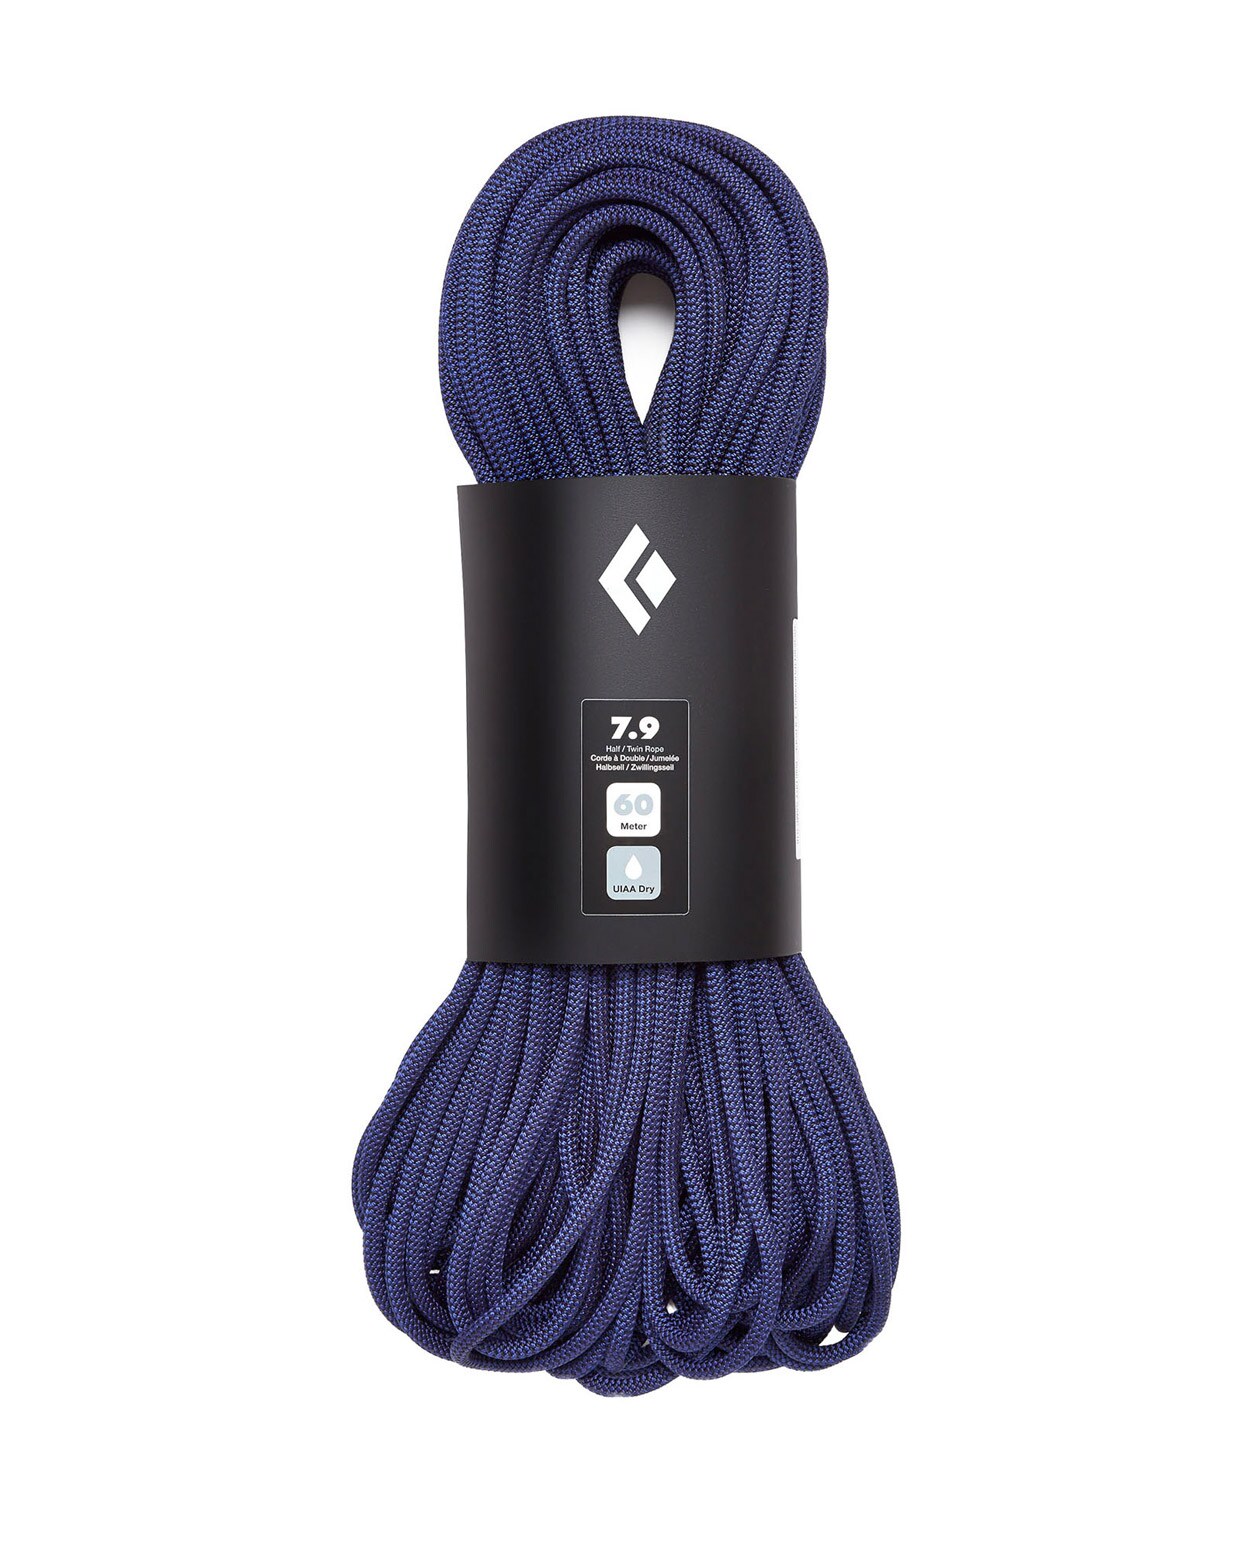 Black Diamond 7.9 Rope 60m DRY Purple